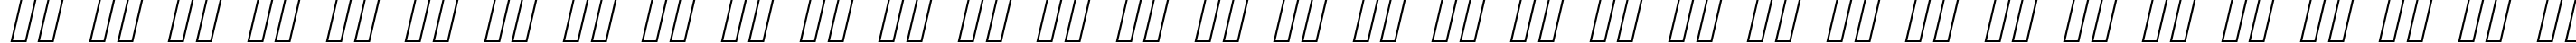 Пример написания русского алфавита шрифтом Cursive Sans